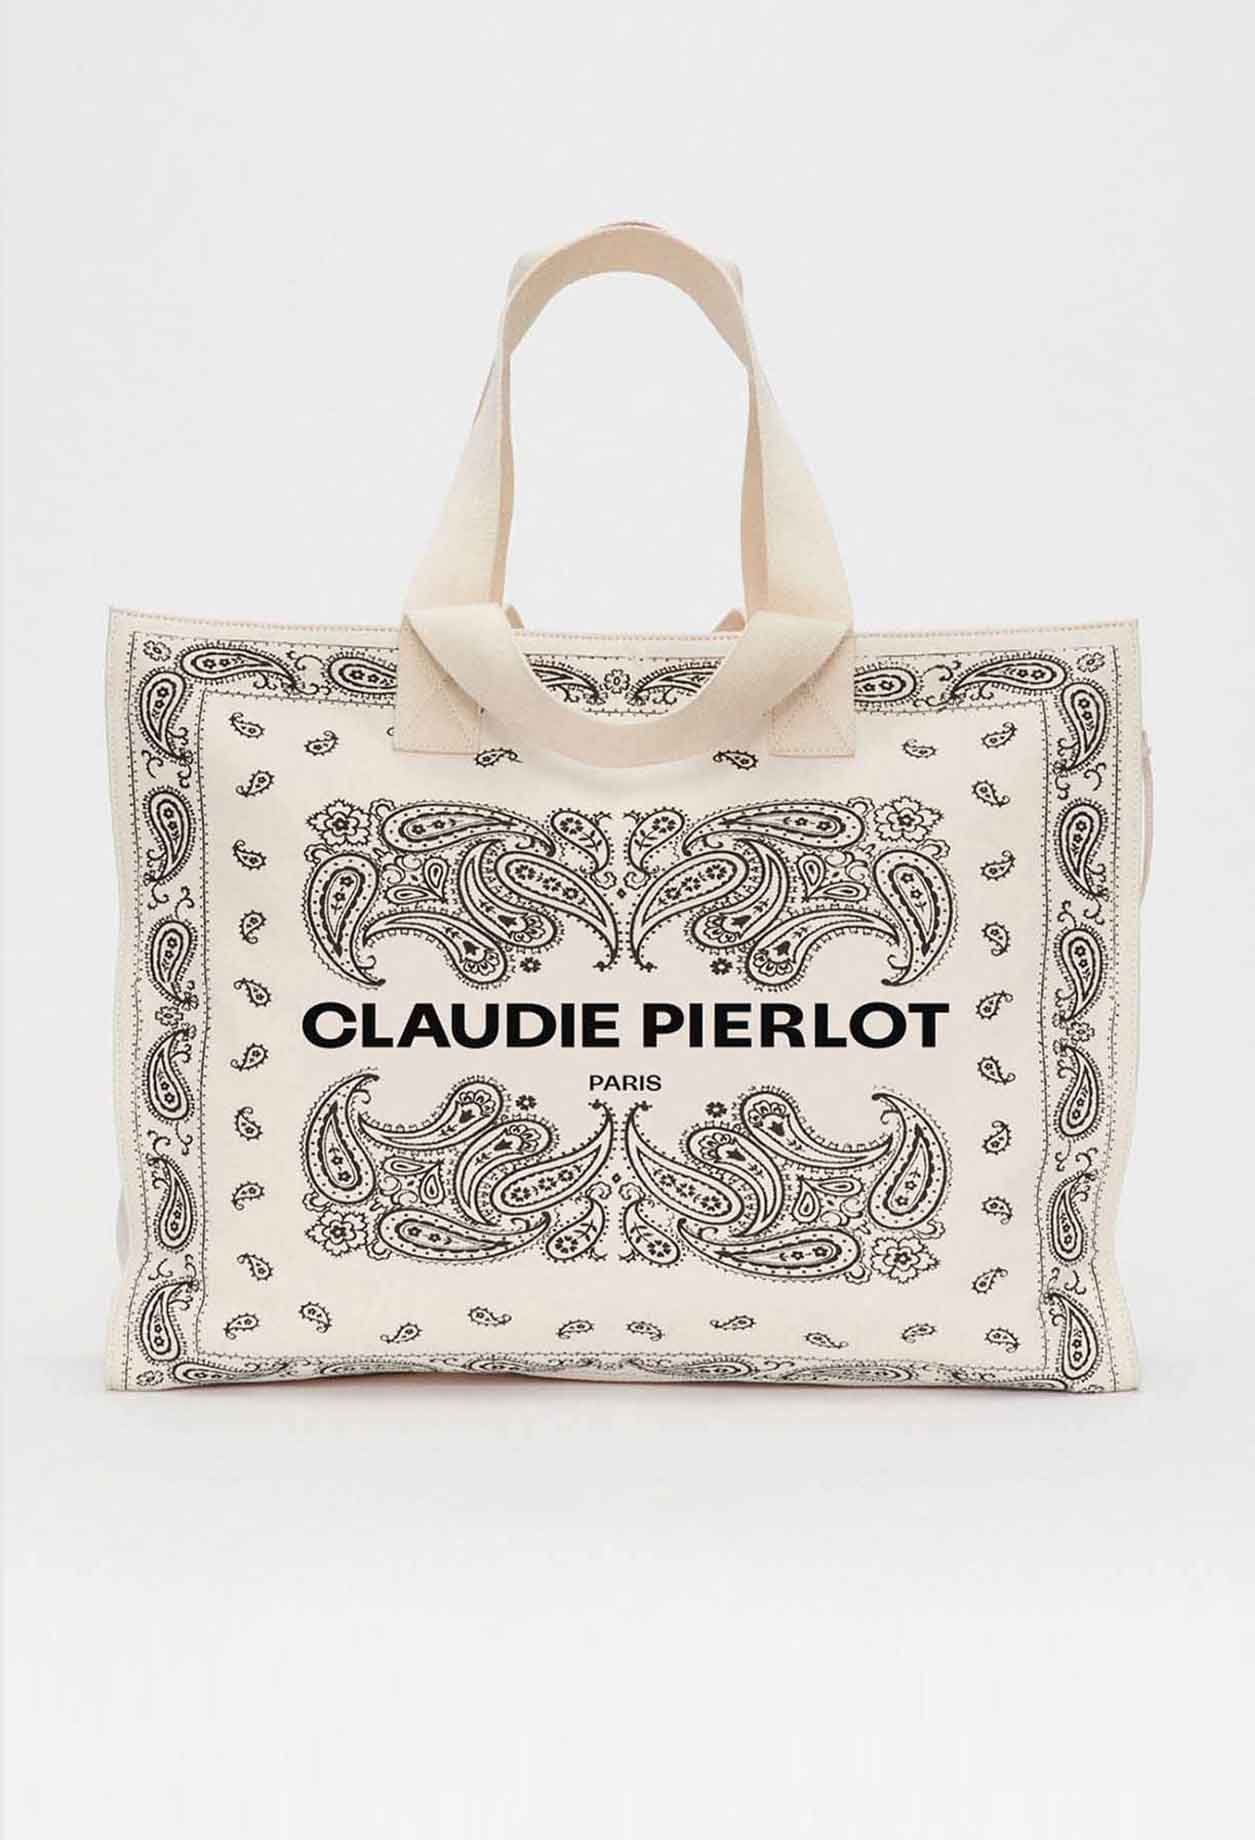 Claudie Pierlot – Sac cabas coton recyclé à 95,00 € chez Claudie Pierlot